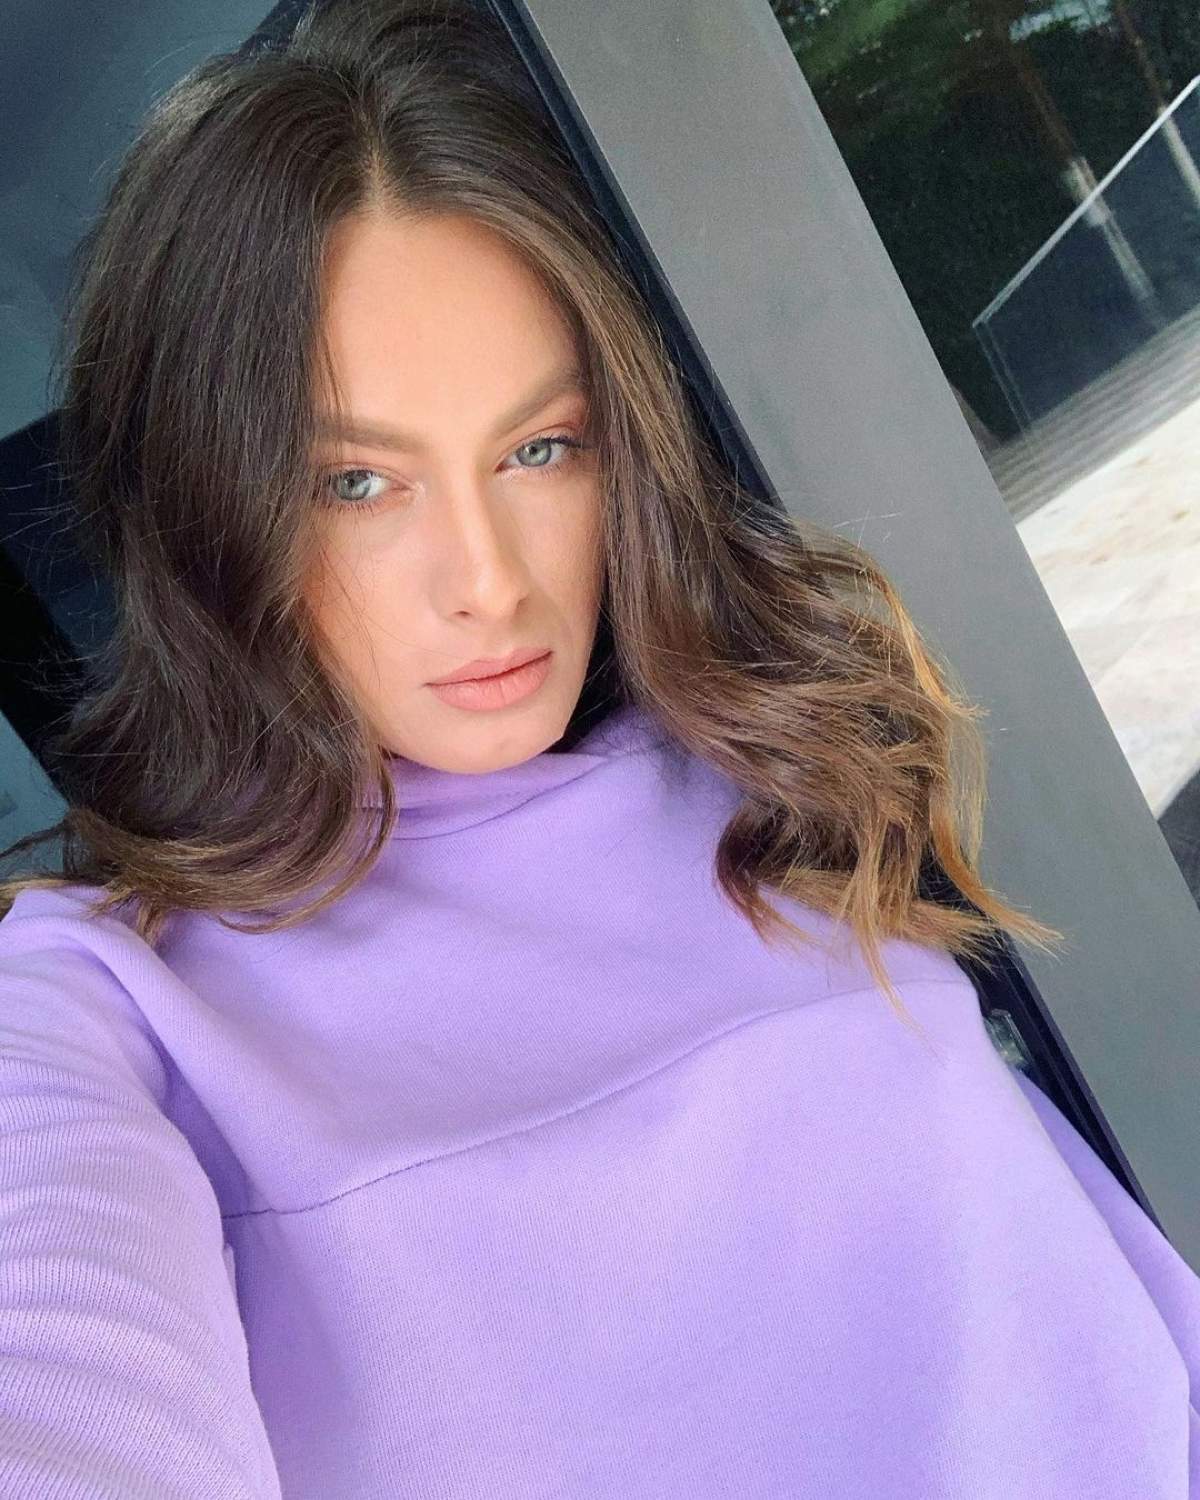 Raluka și-a făcut un selfie, foarte serioasă, purtând o bluză lila